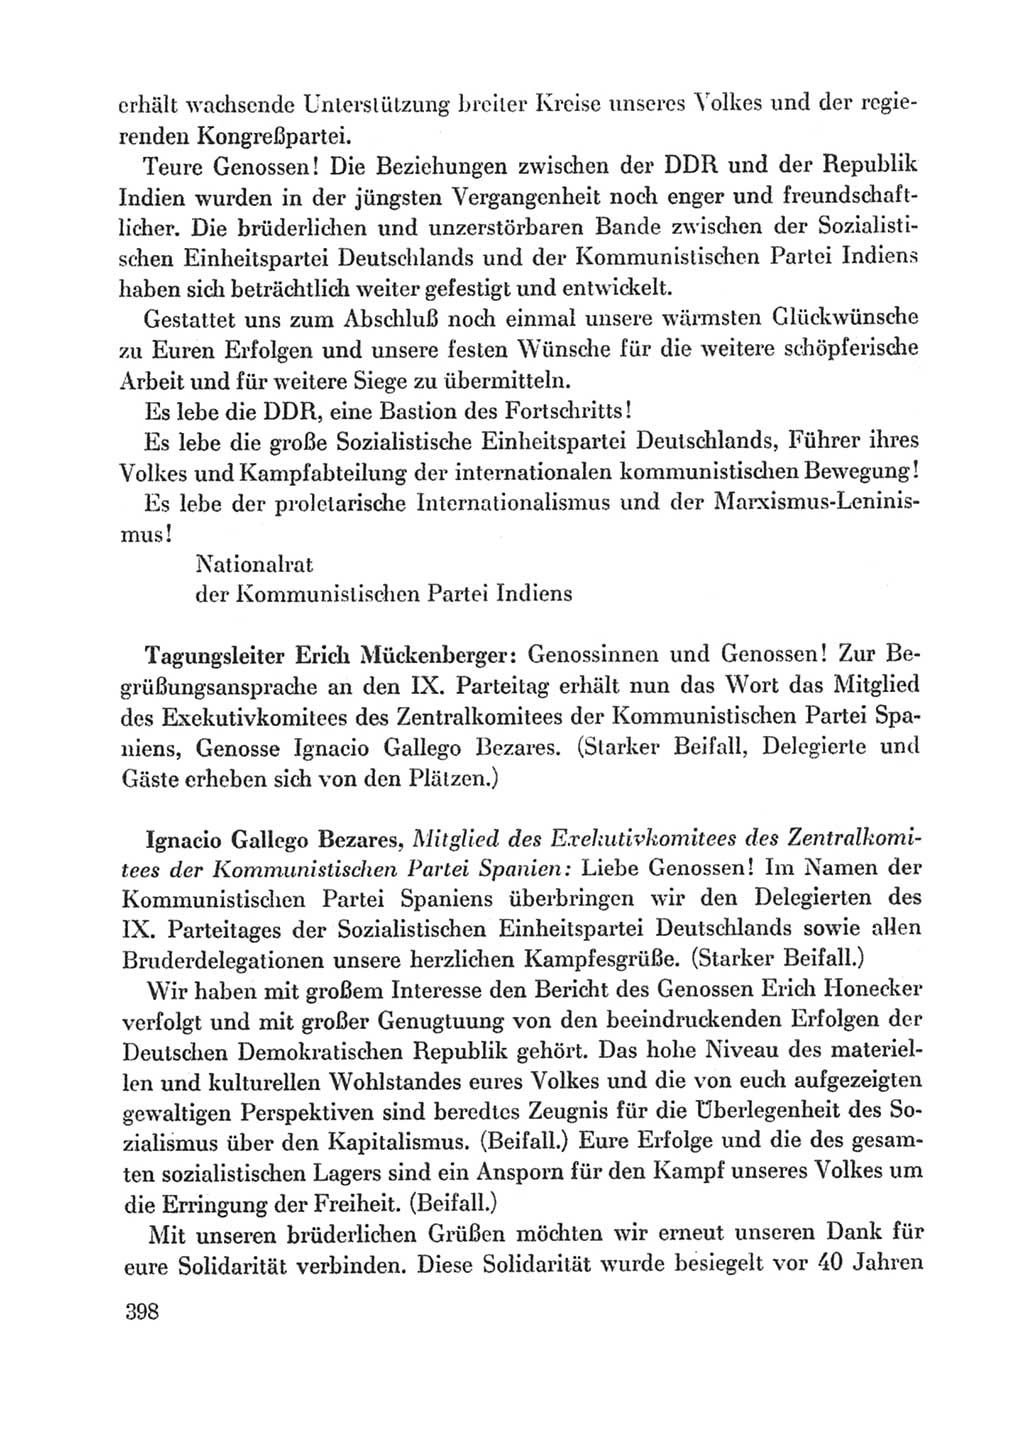 Protokoll der Verhandlungen des Ⅸ. Parteitages der Sozialistischen Einheitspartei Deutschlands (SED) [Deutsche Demokratische Republik (DDR)] 1976, Band 1, Seite 398 (Prot. Verh. Ⅸ. PT SED DDR 1976, Bd. 1, S. 398)